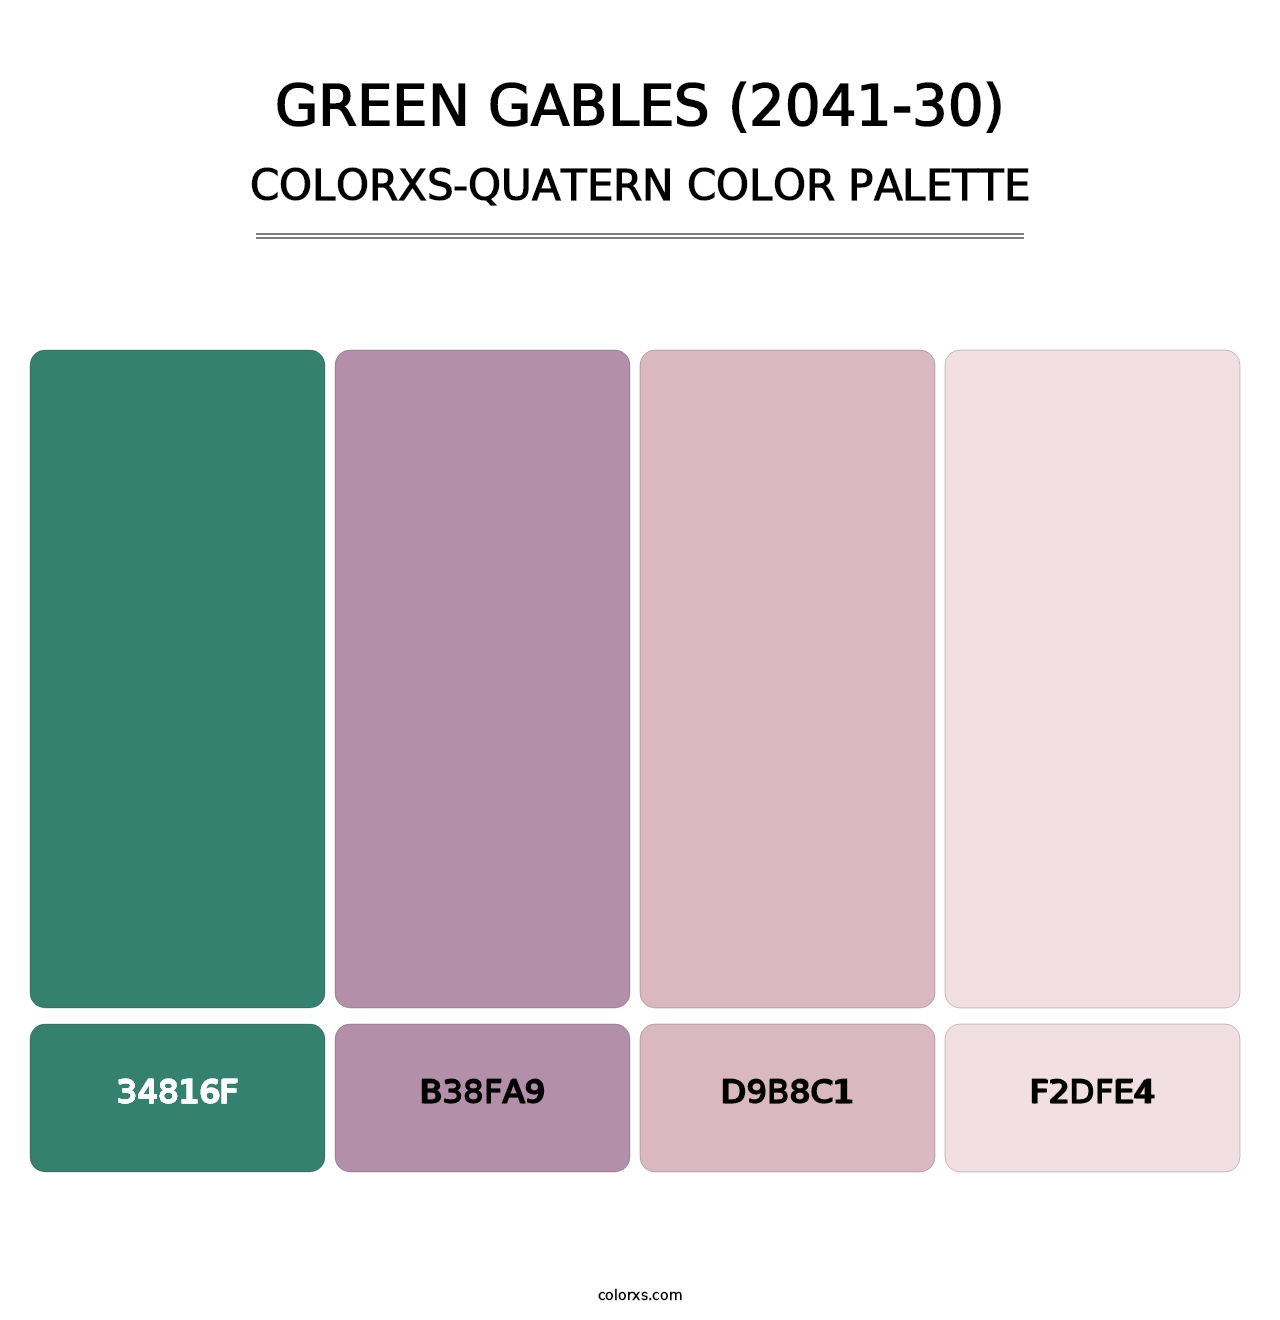 Green Gables (2041-30) - Colorxs Quatern Palette